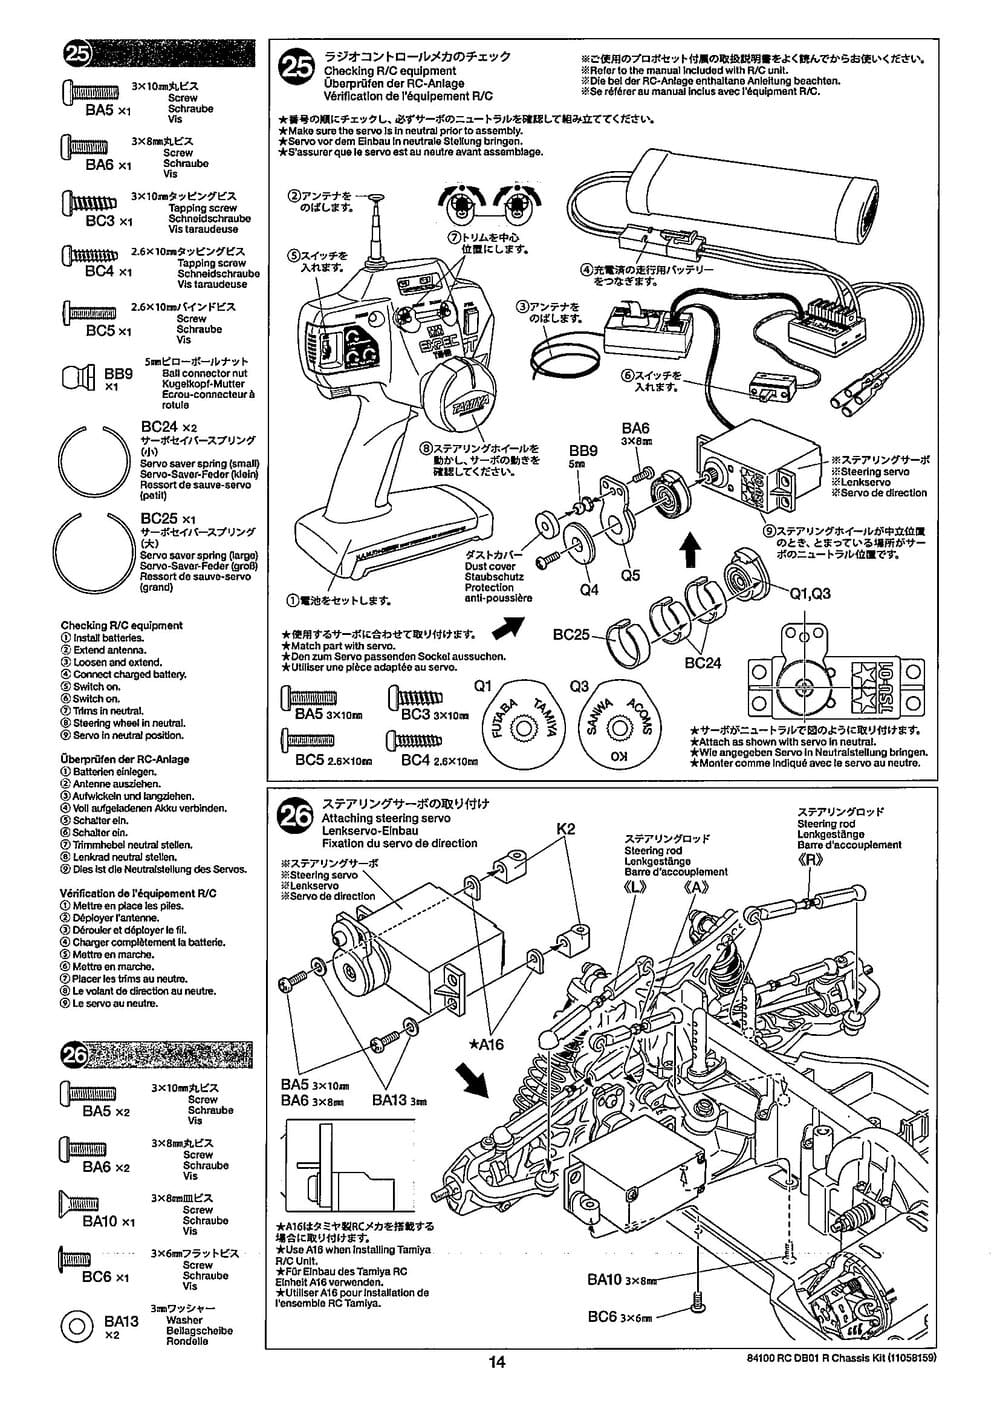 Tamiya - DB-01R Chassis - Manual - Page 14